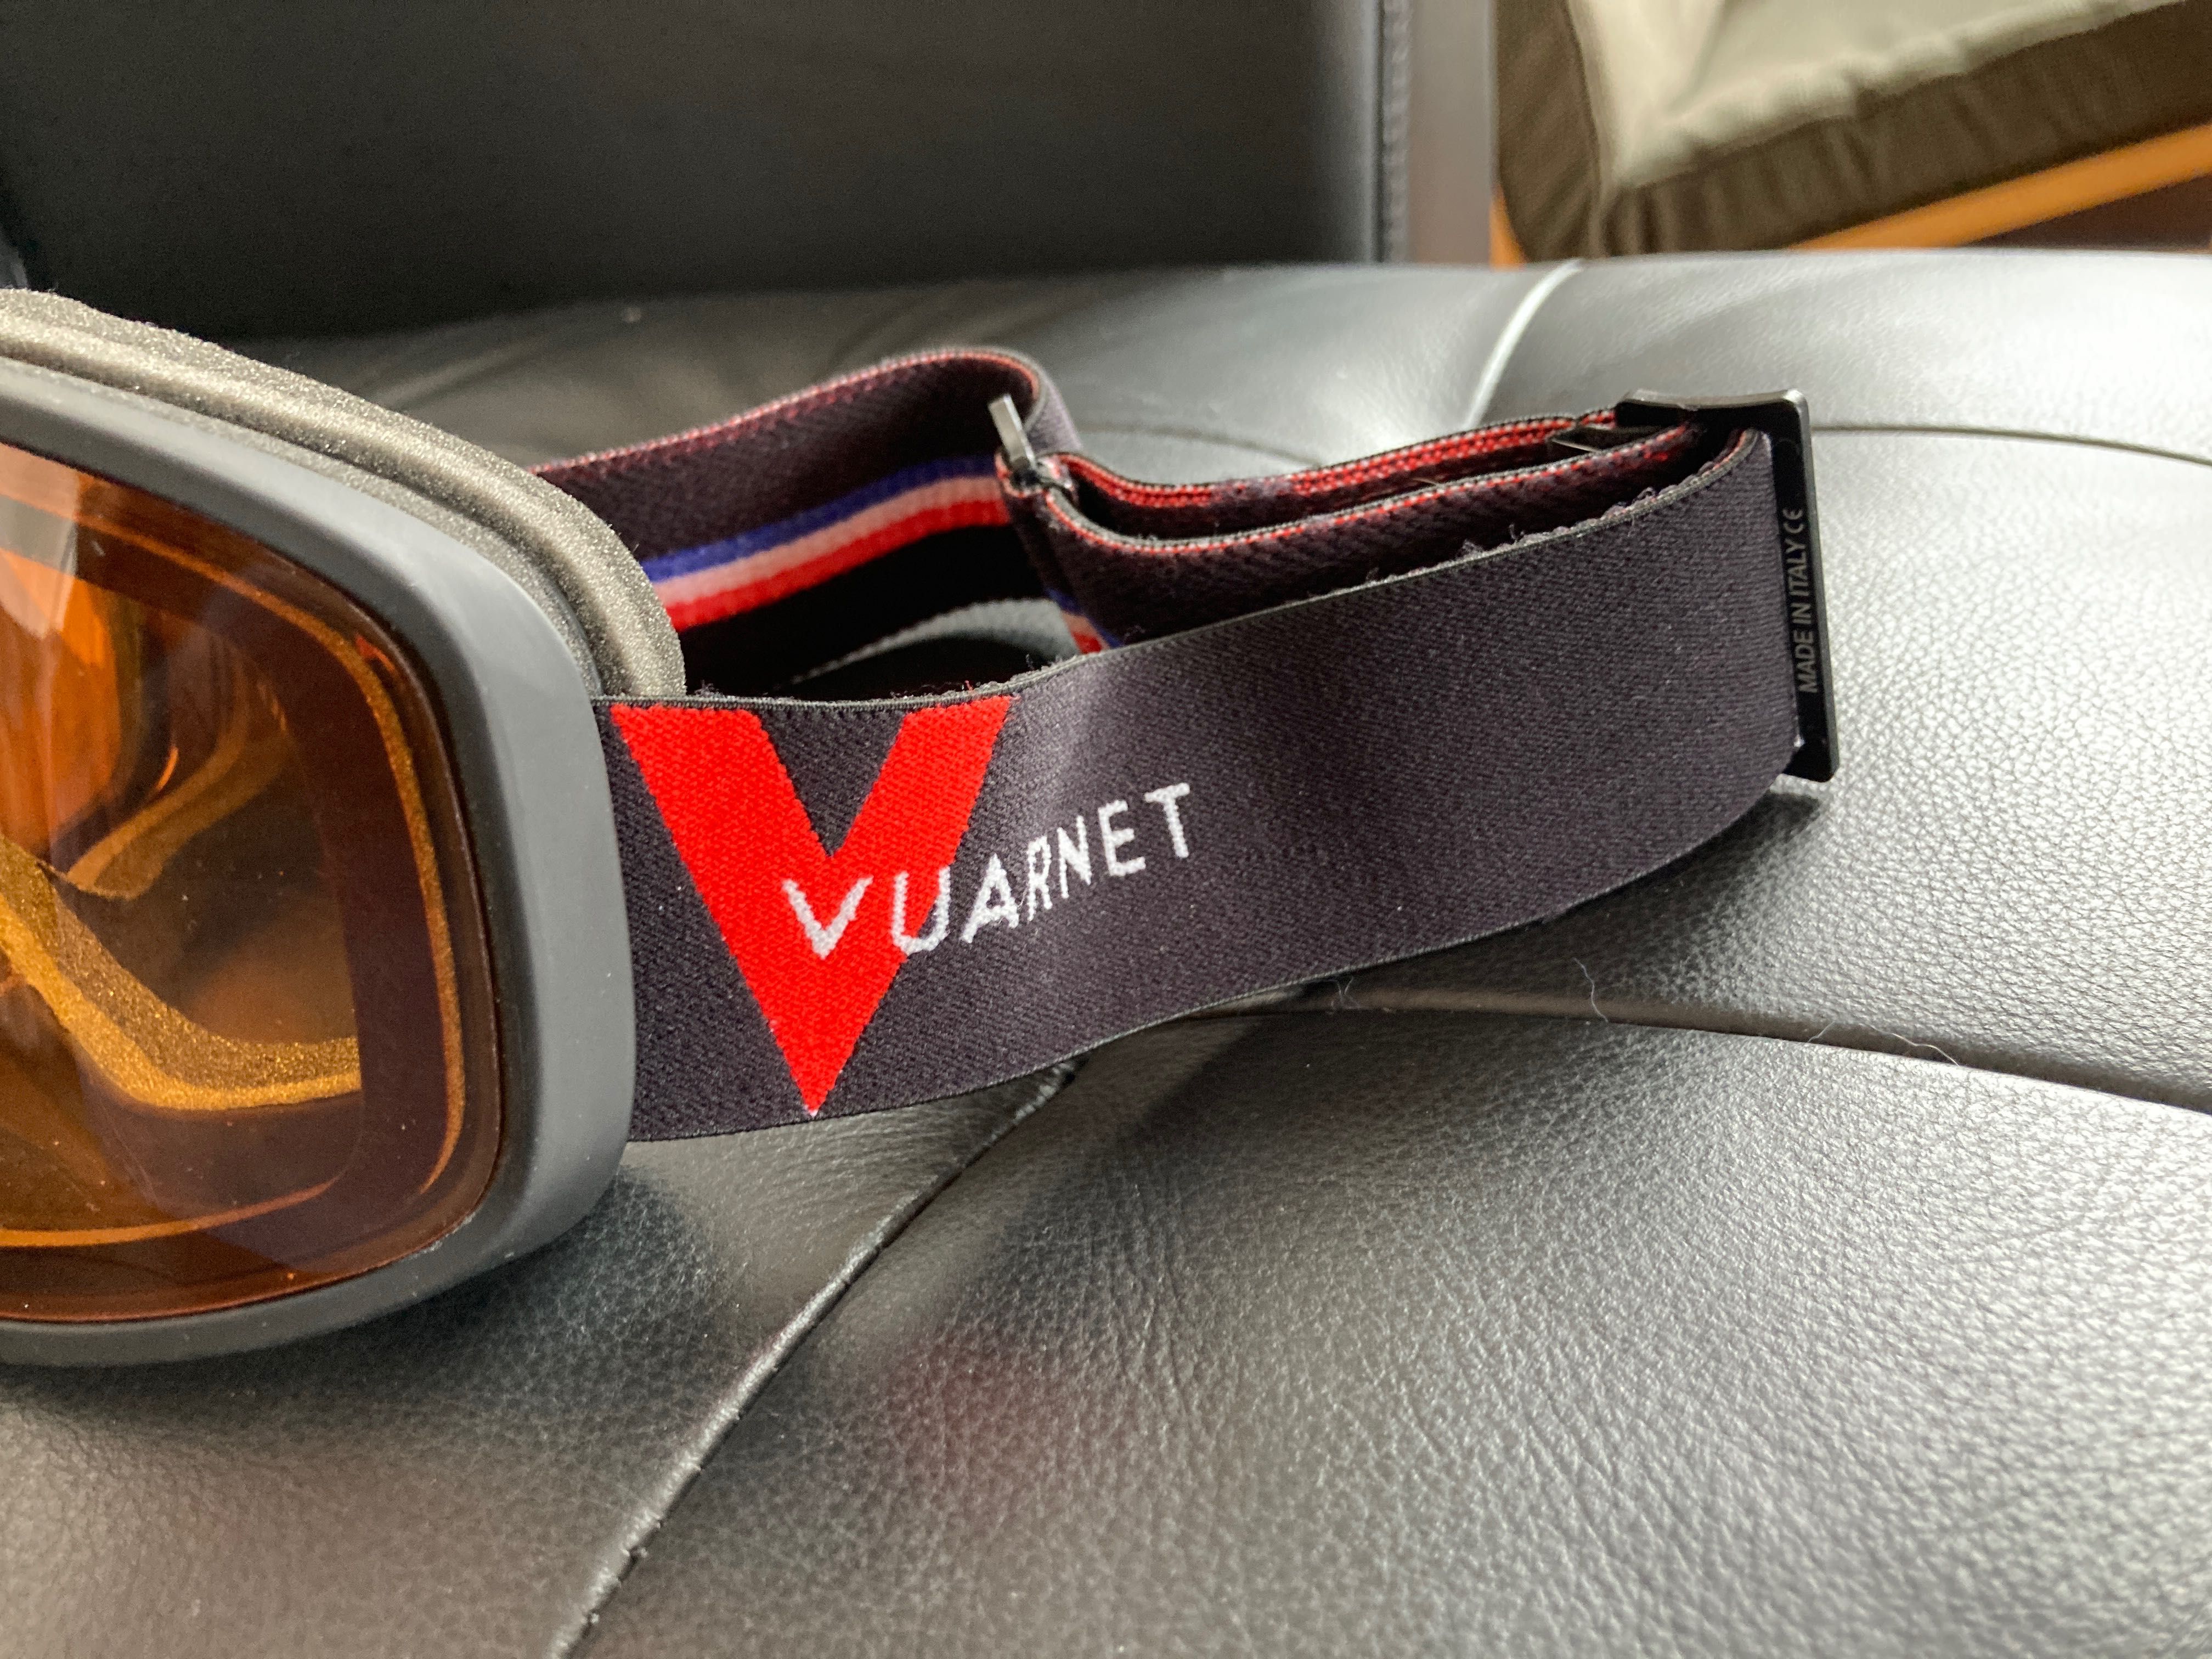 ски очила Vuarnet pro